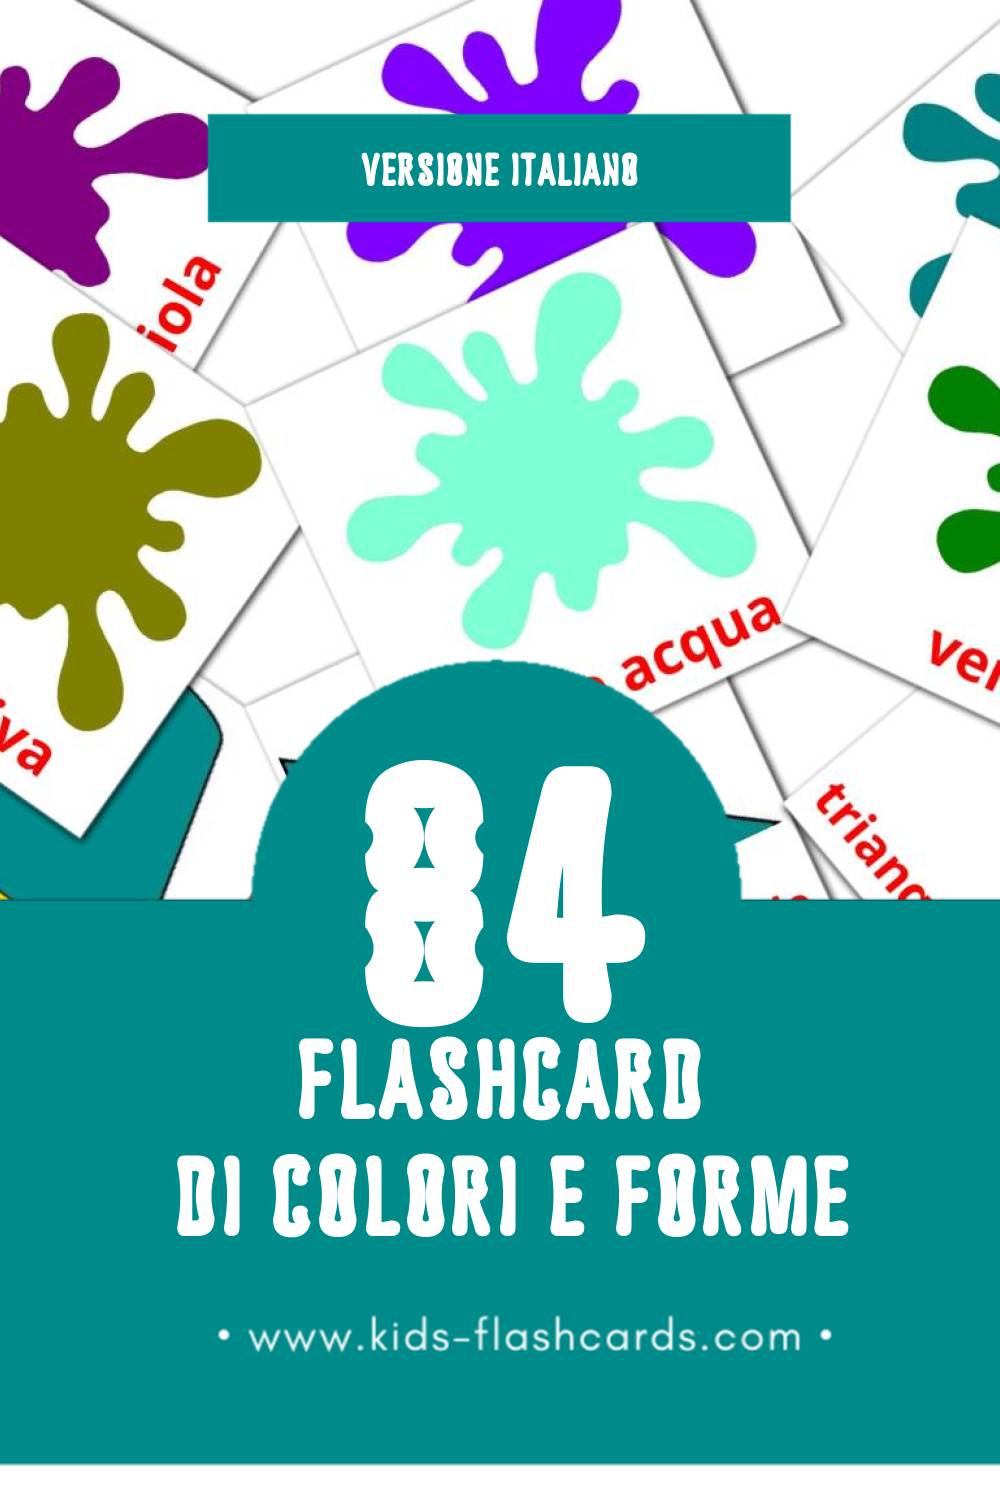 Schede visive sugli Colori e forme per bambini (84 schede in Italiano)